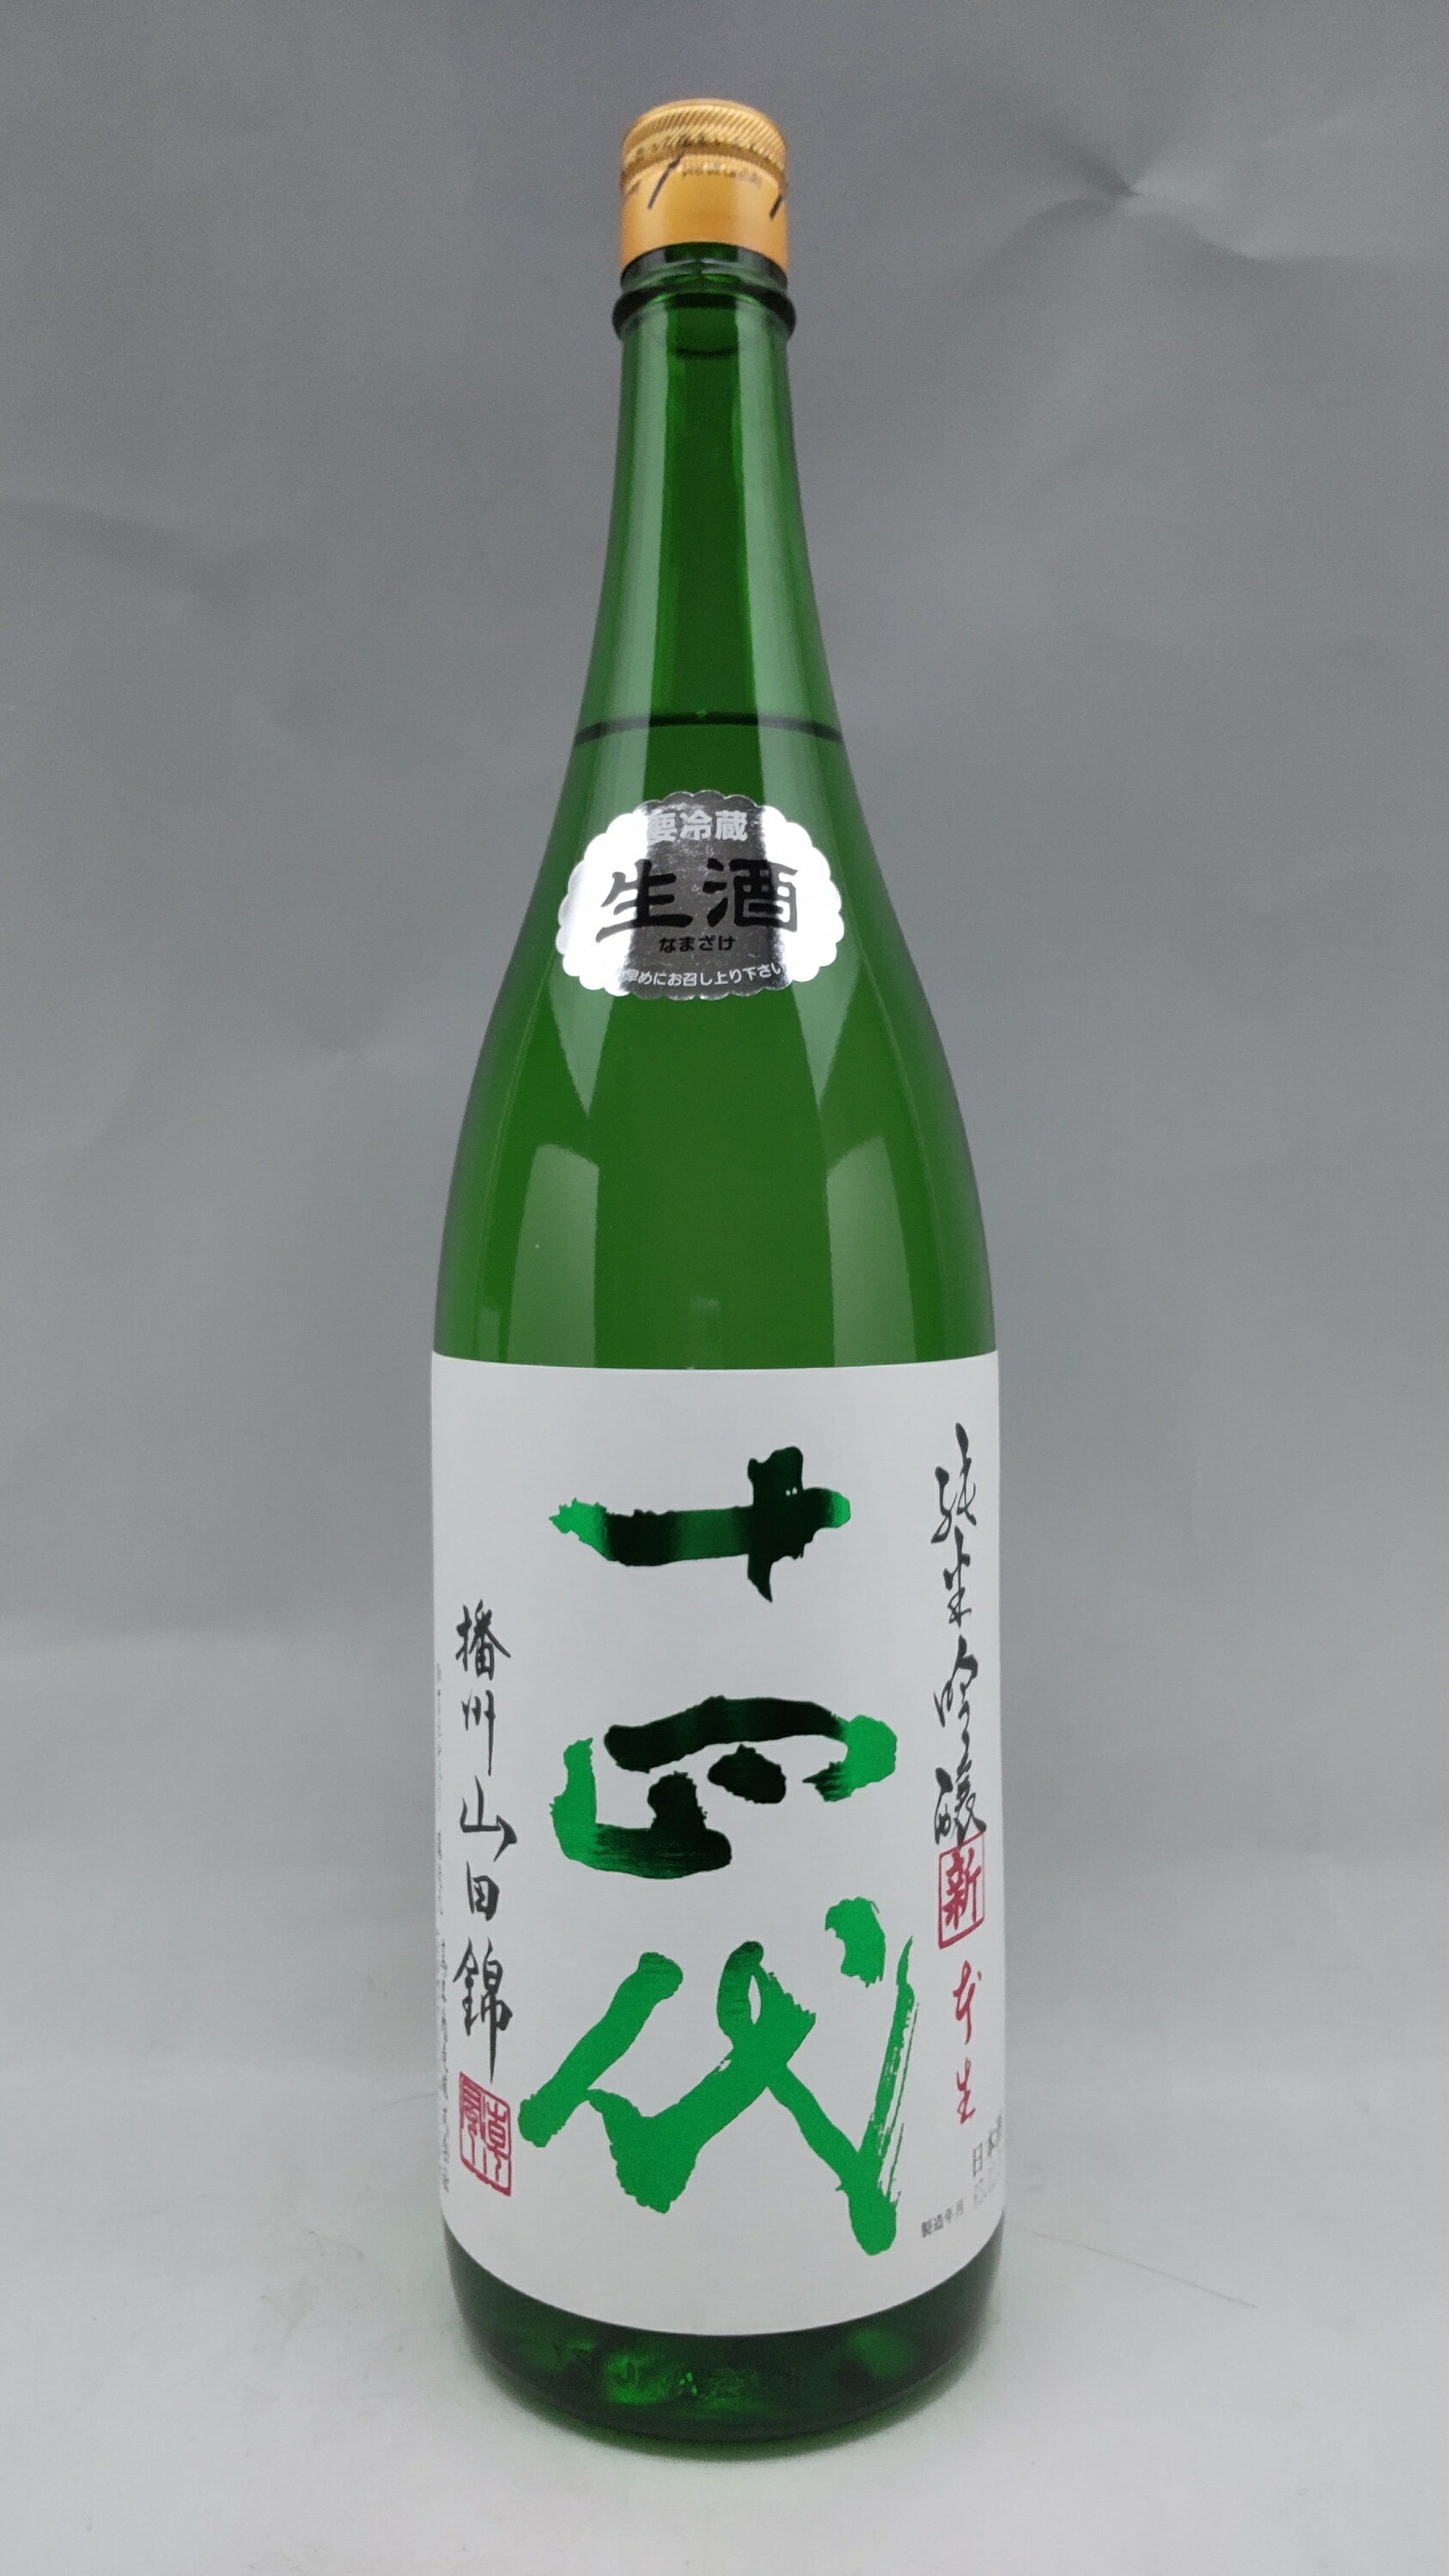 数々の賞を受賞 中取り純米 十四代 1800ml - 日本酒 - cronoslab.org